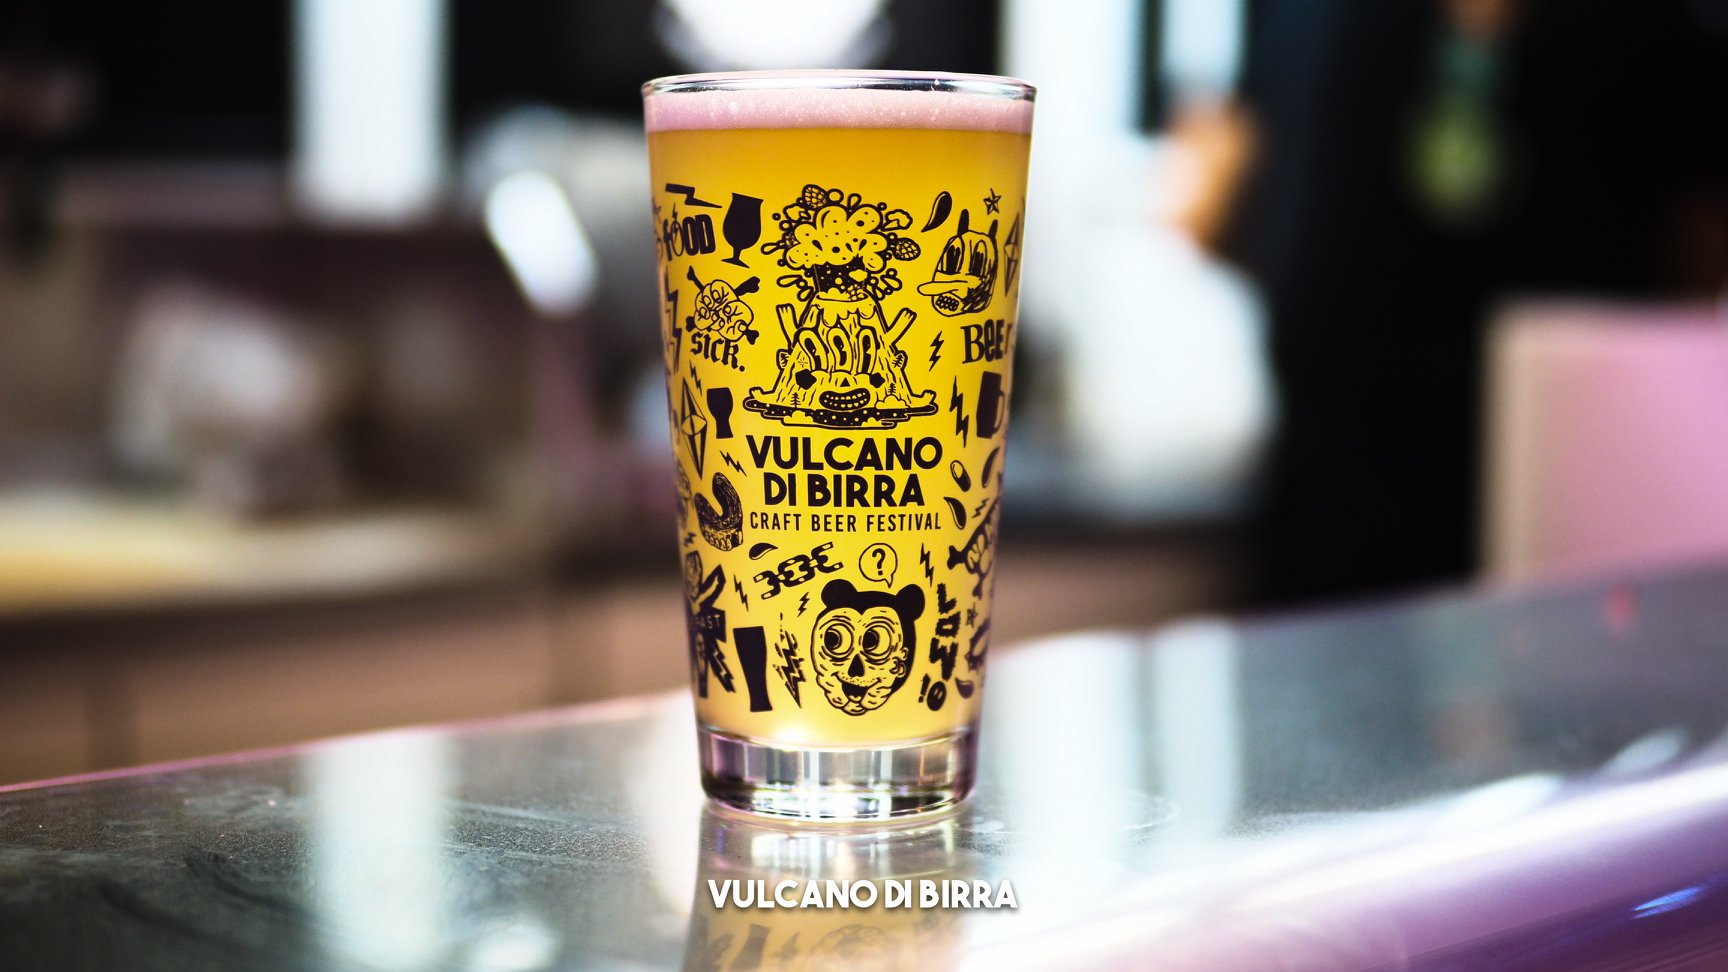 Torna Vulcano di birra dal 16 al 18 giugno!